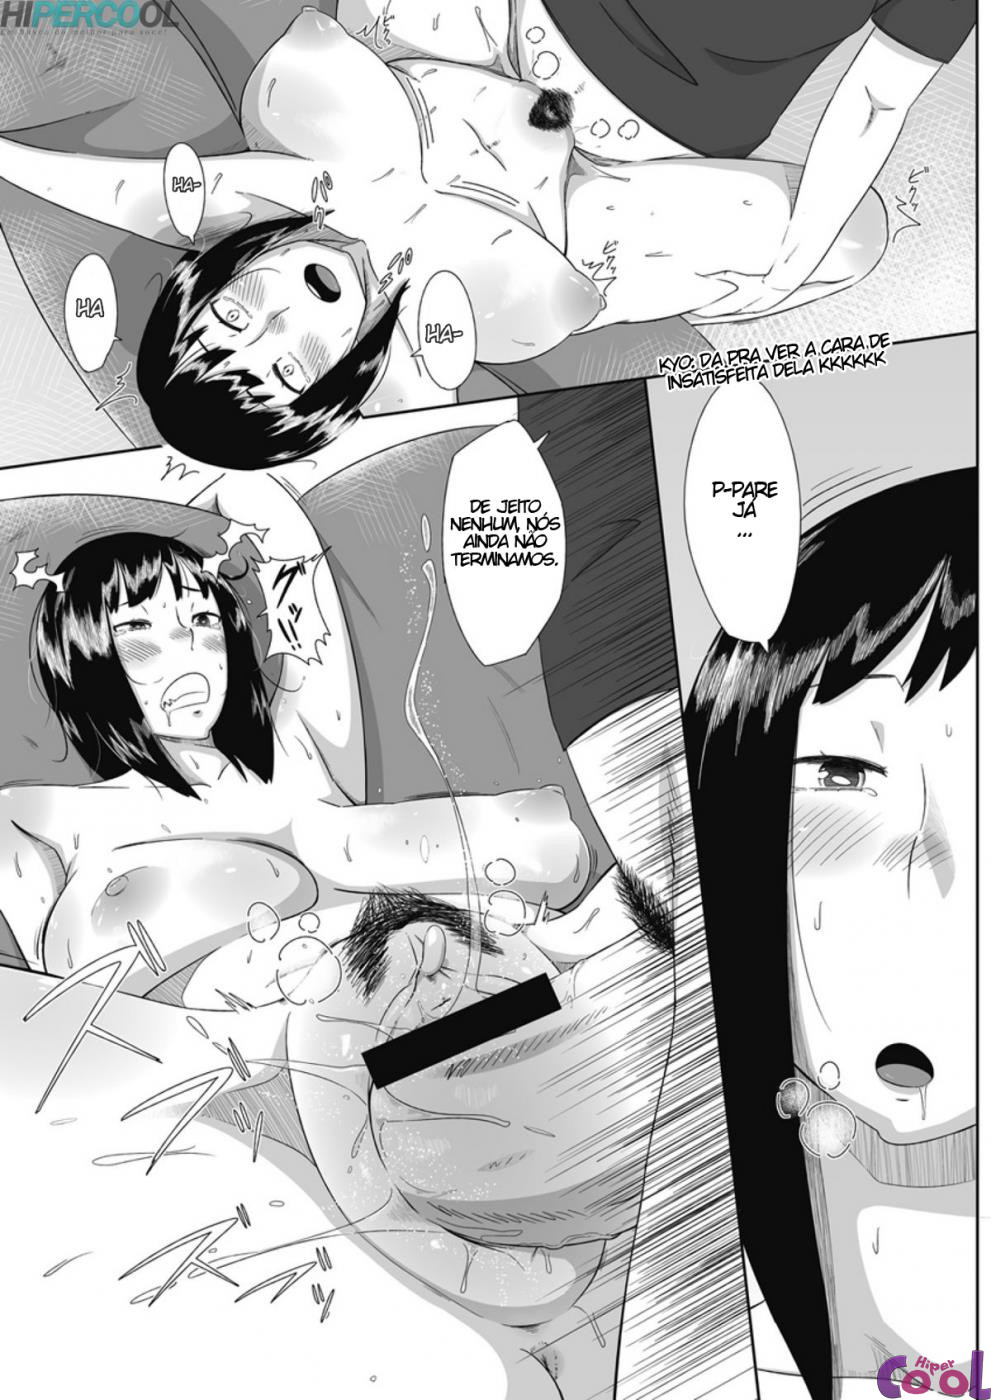 himitsu-no-bitch-chan-chapter-01-page-17.jpg